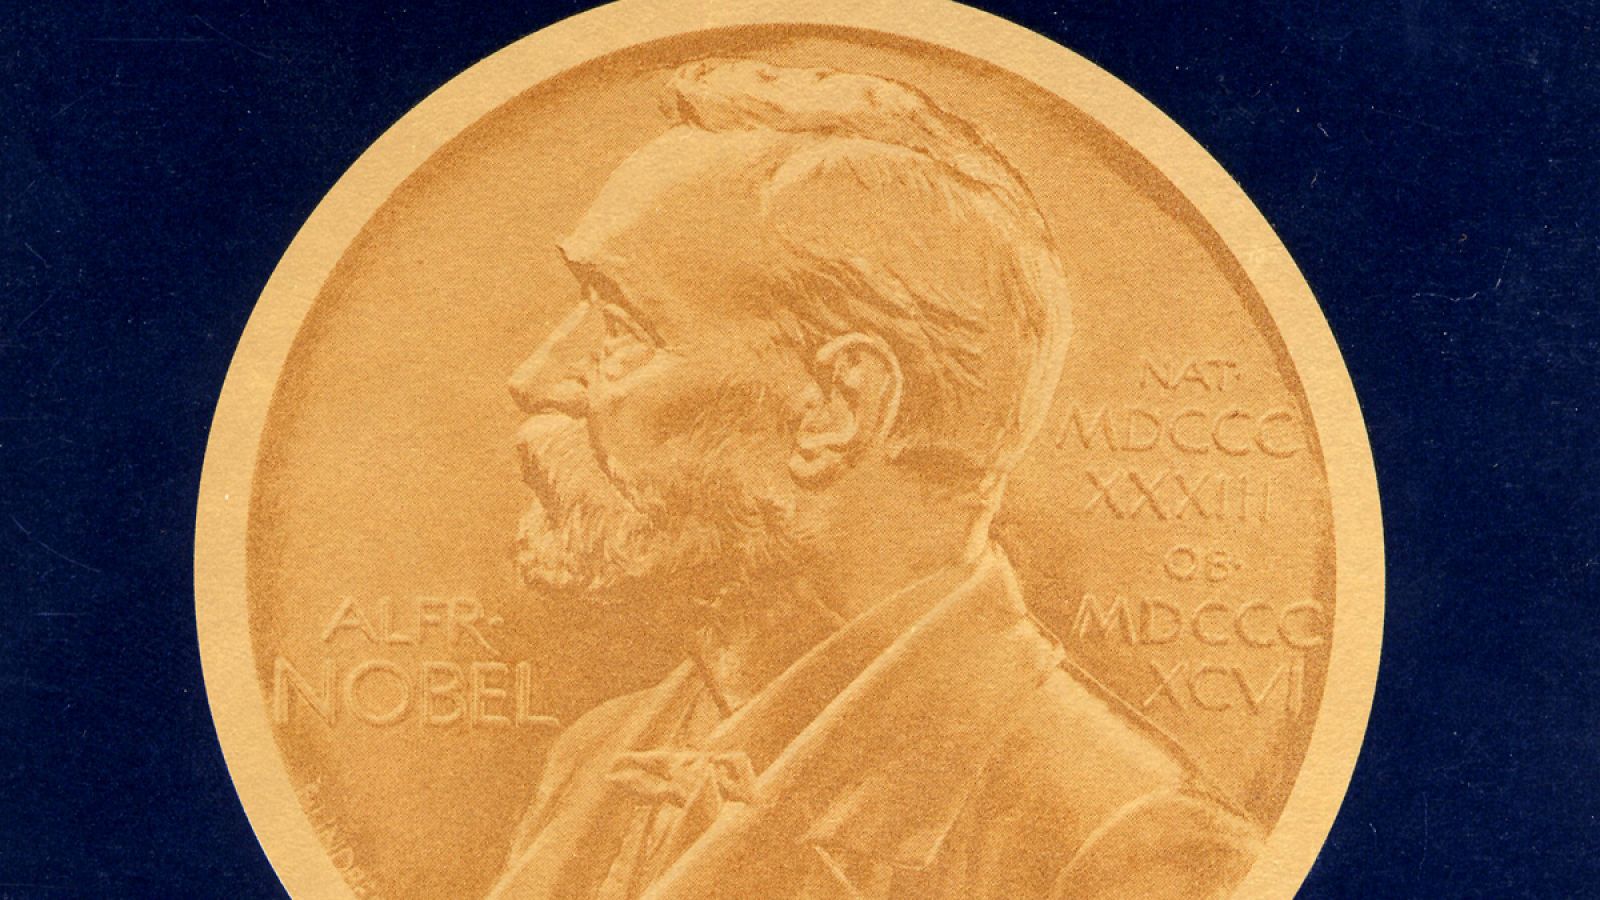 Medalla con la efigie de Alfred Nobel